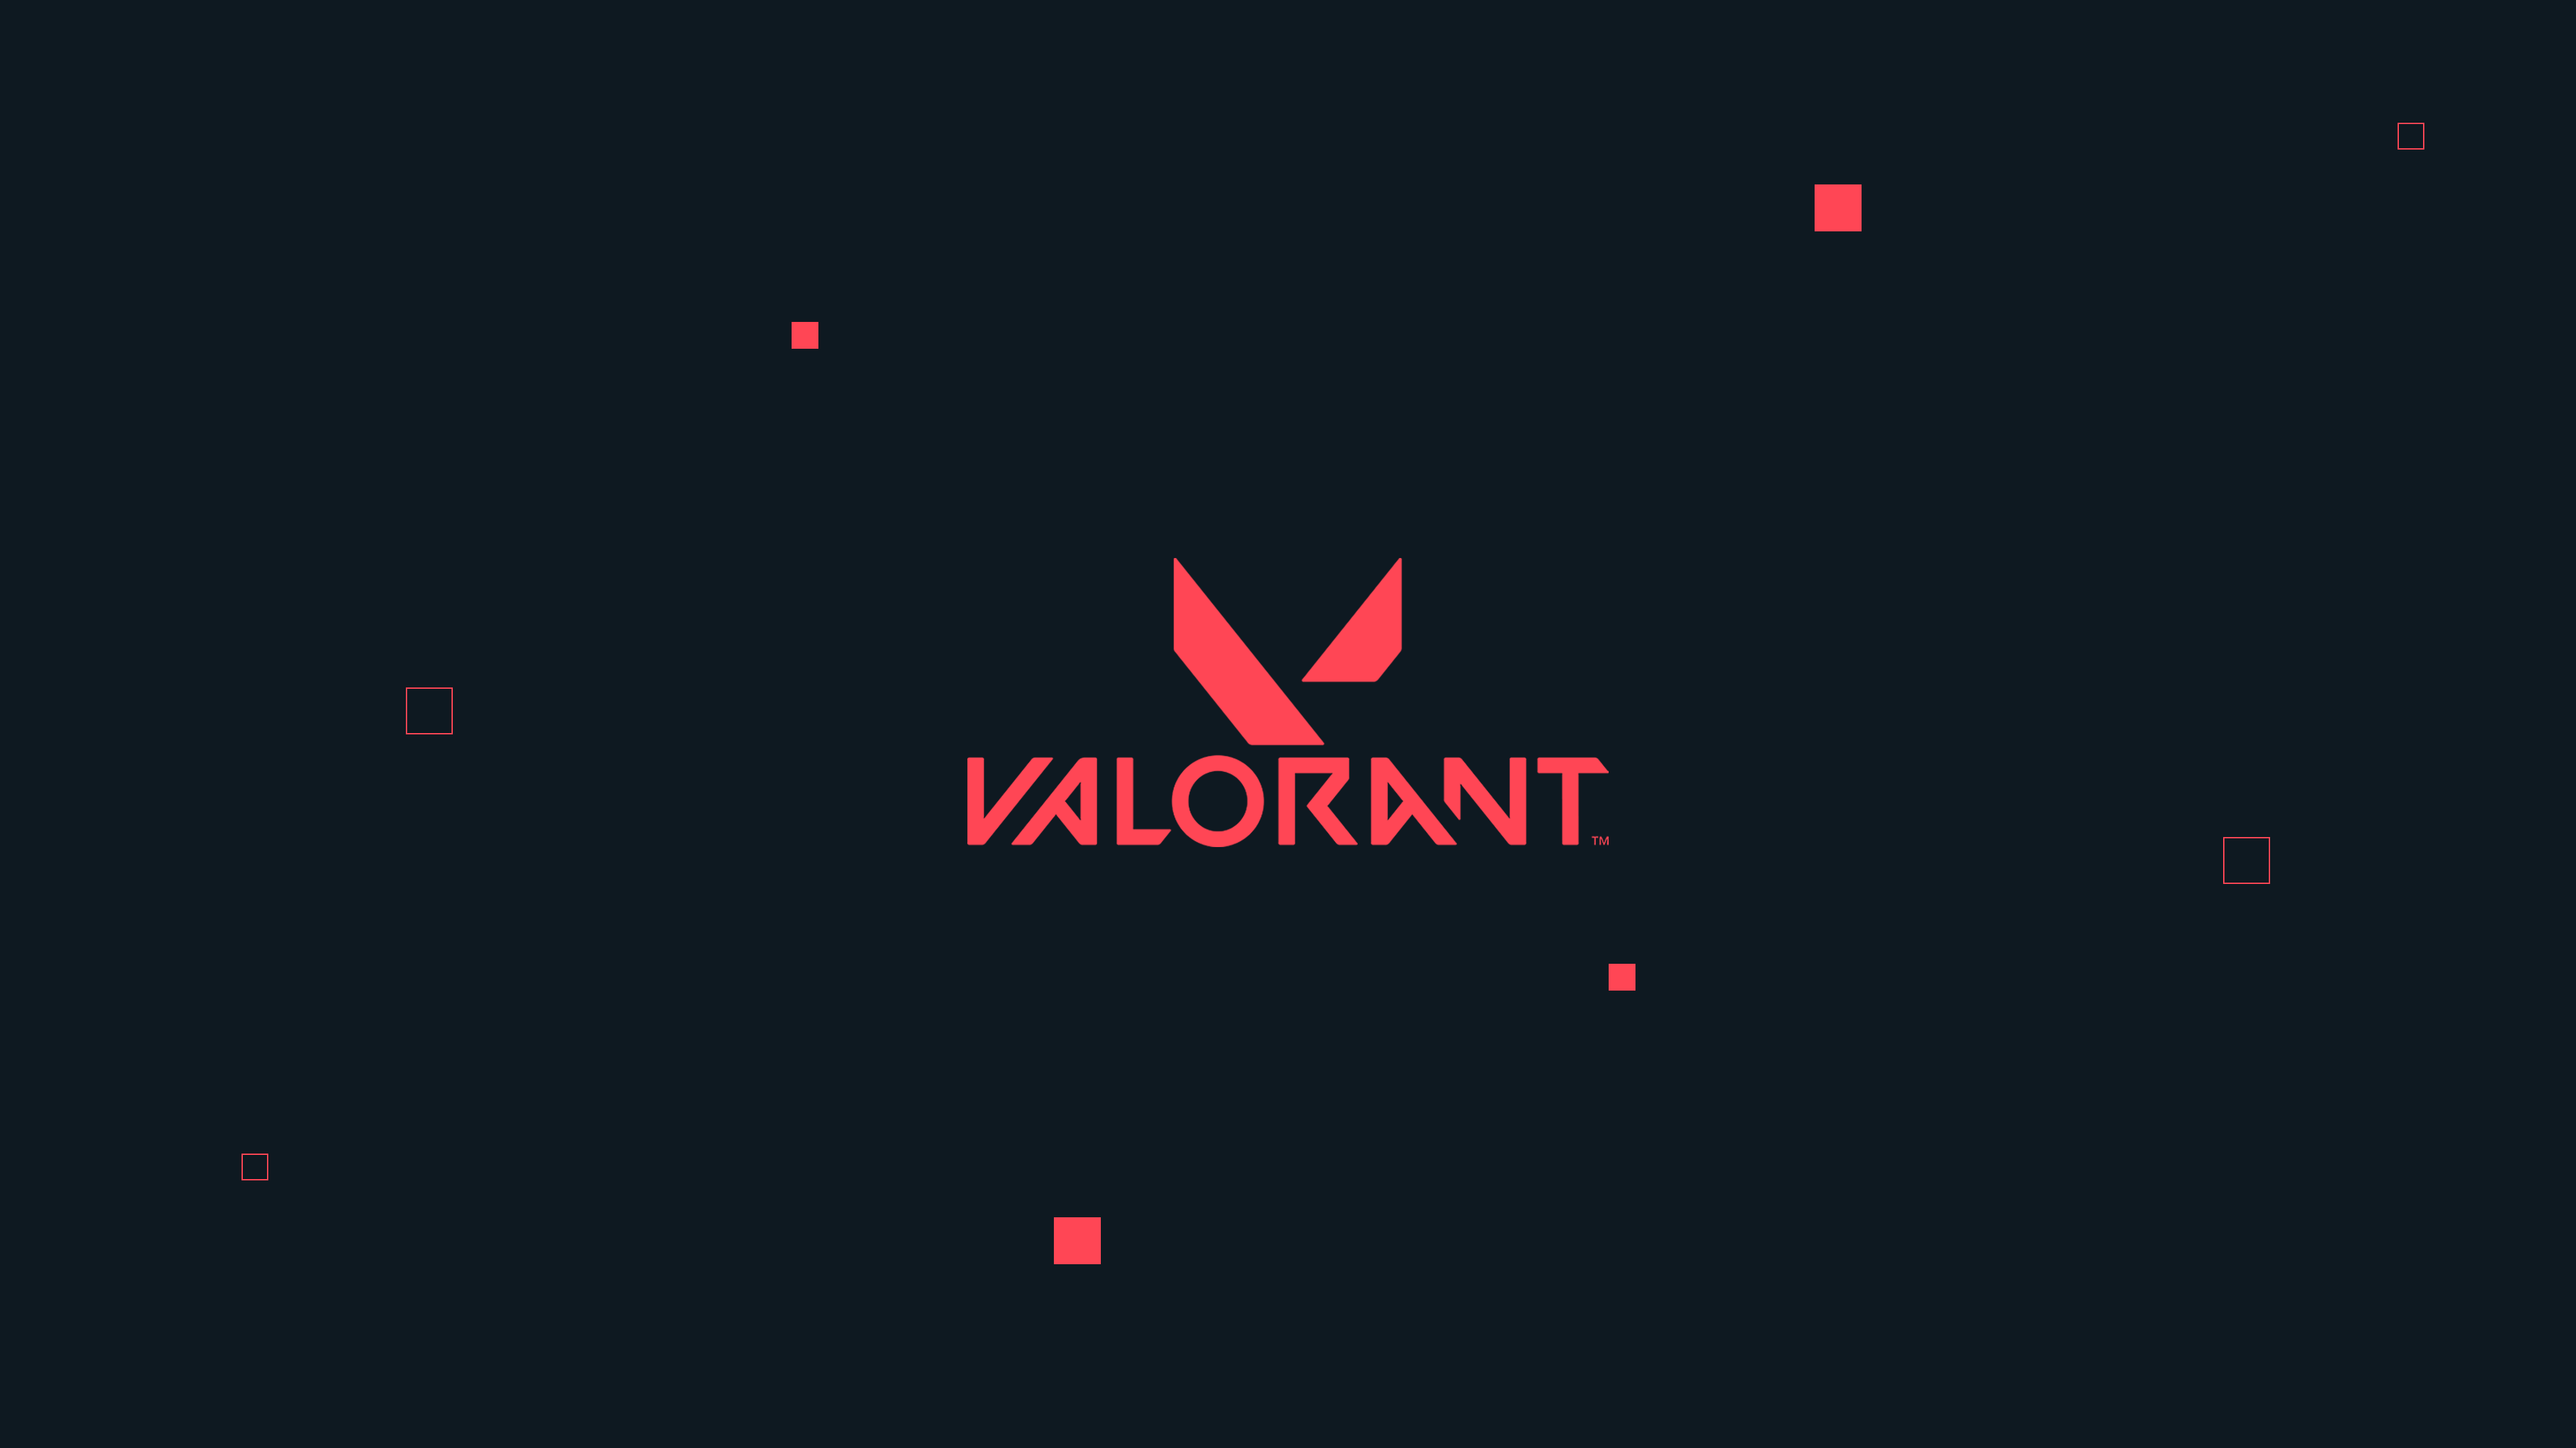 Valorant 4K Wallpapers   DesktopMobile 4k background Desktop